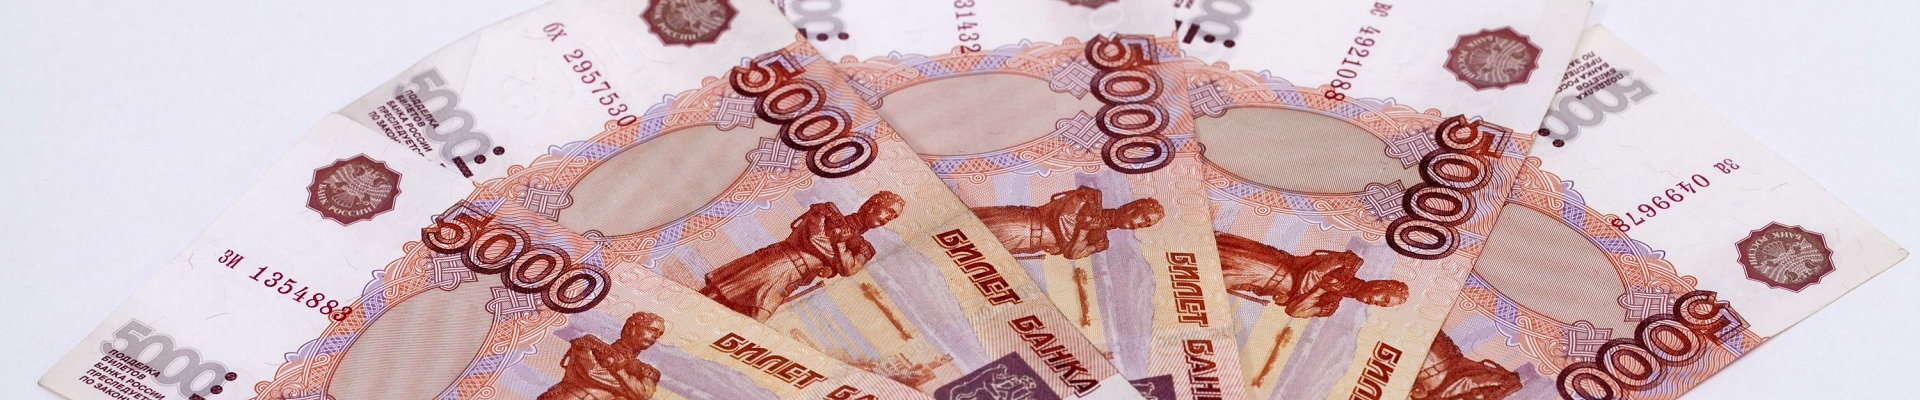 Банк России сообщил о новой схеме обмана москвичей на взятие кредита, которая набирает популярность среди мошенников